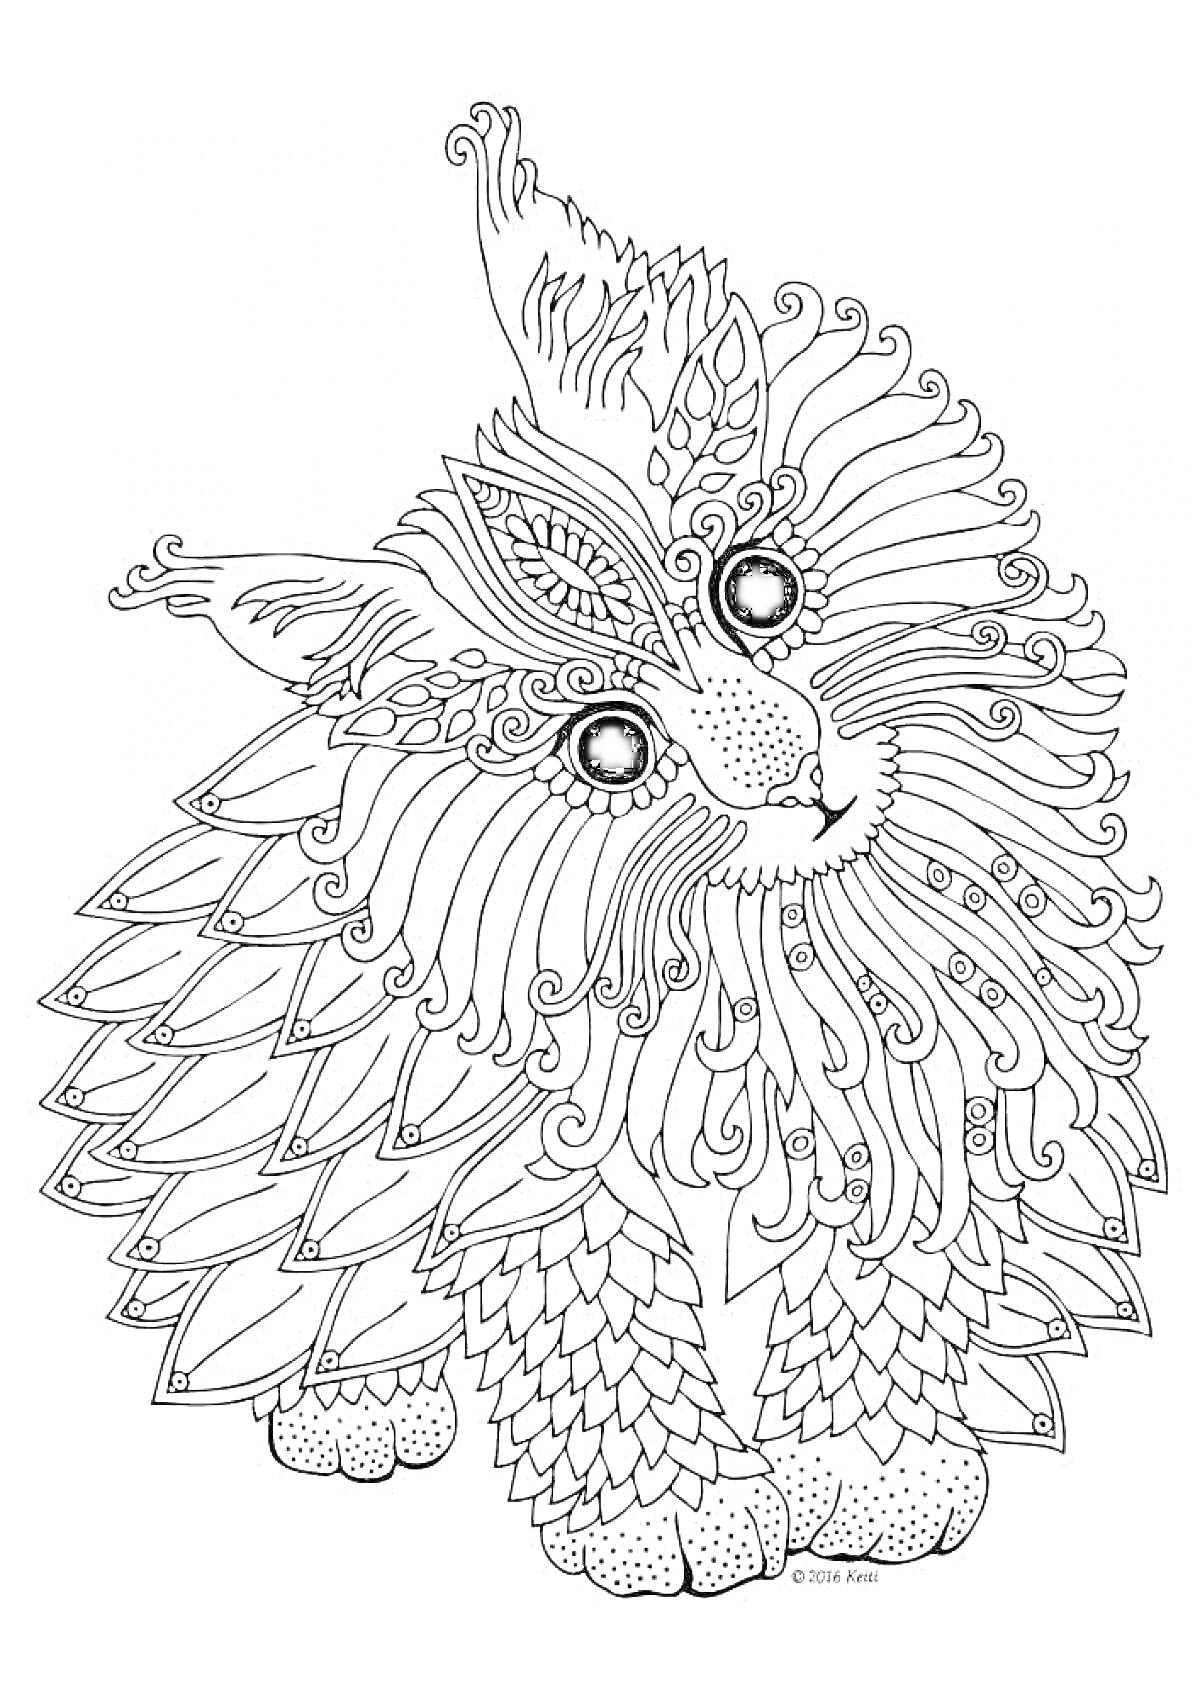 Раскраска Кошка с декоративными узорами, включает сложные и детализированные перьевые и завитковые узоры по всему телу